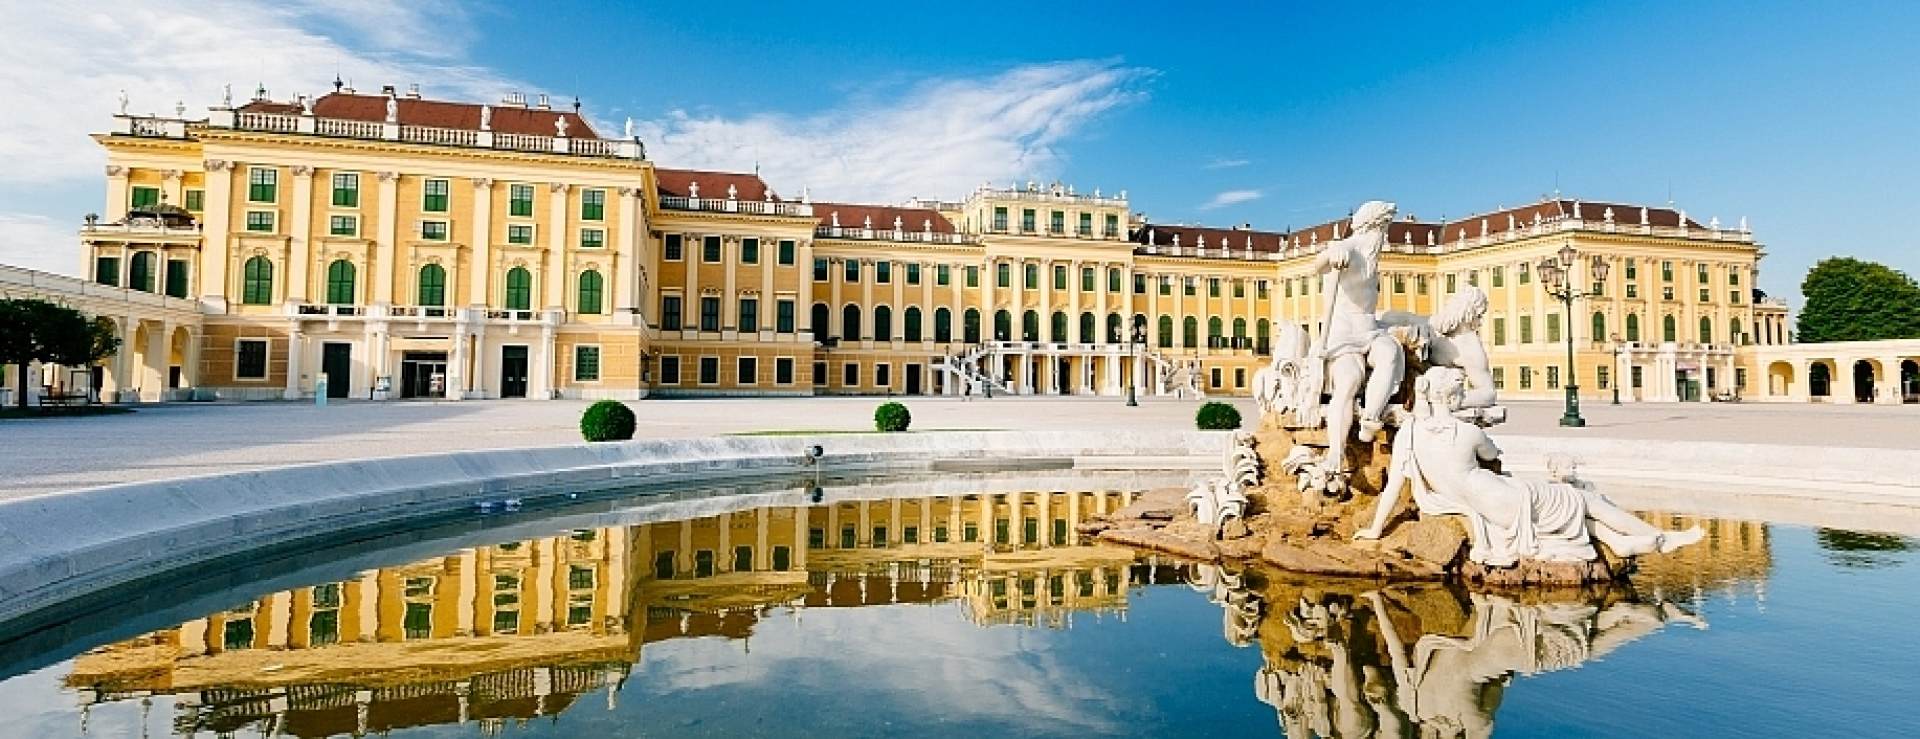 Croisière sur le Danube bleu à Vienne, dîner et concert au palais impérial de Schönbrunn